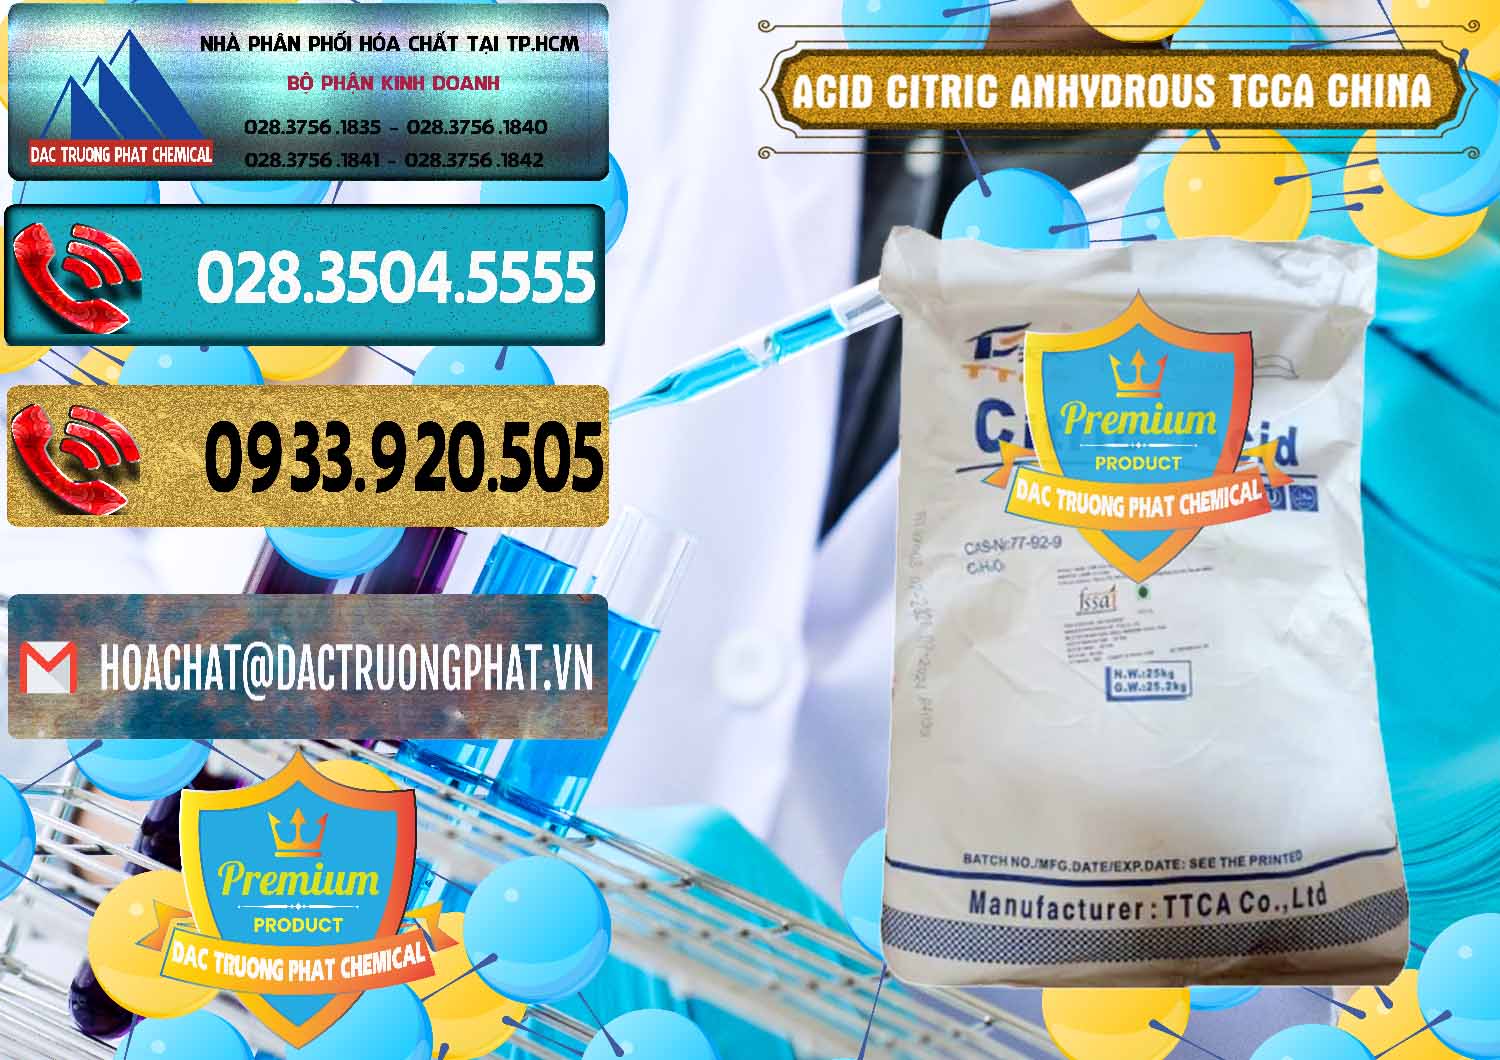 Cty chuyên bán ( phân phối ) Acid Citric - Axit Citric Anhydrous TCCA Trung Quốc China - 0442 - Cty chuyên nhập khẩu và cung cấp hóa chất tại TP.HCM - hoachatdetnhuom.com